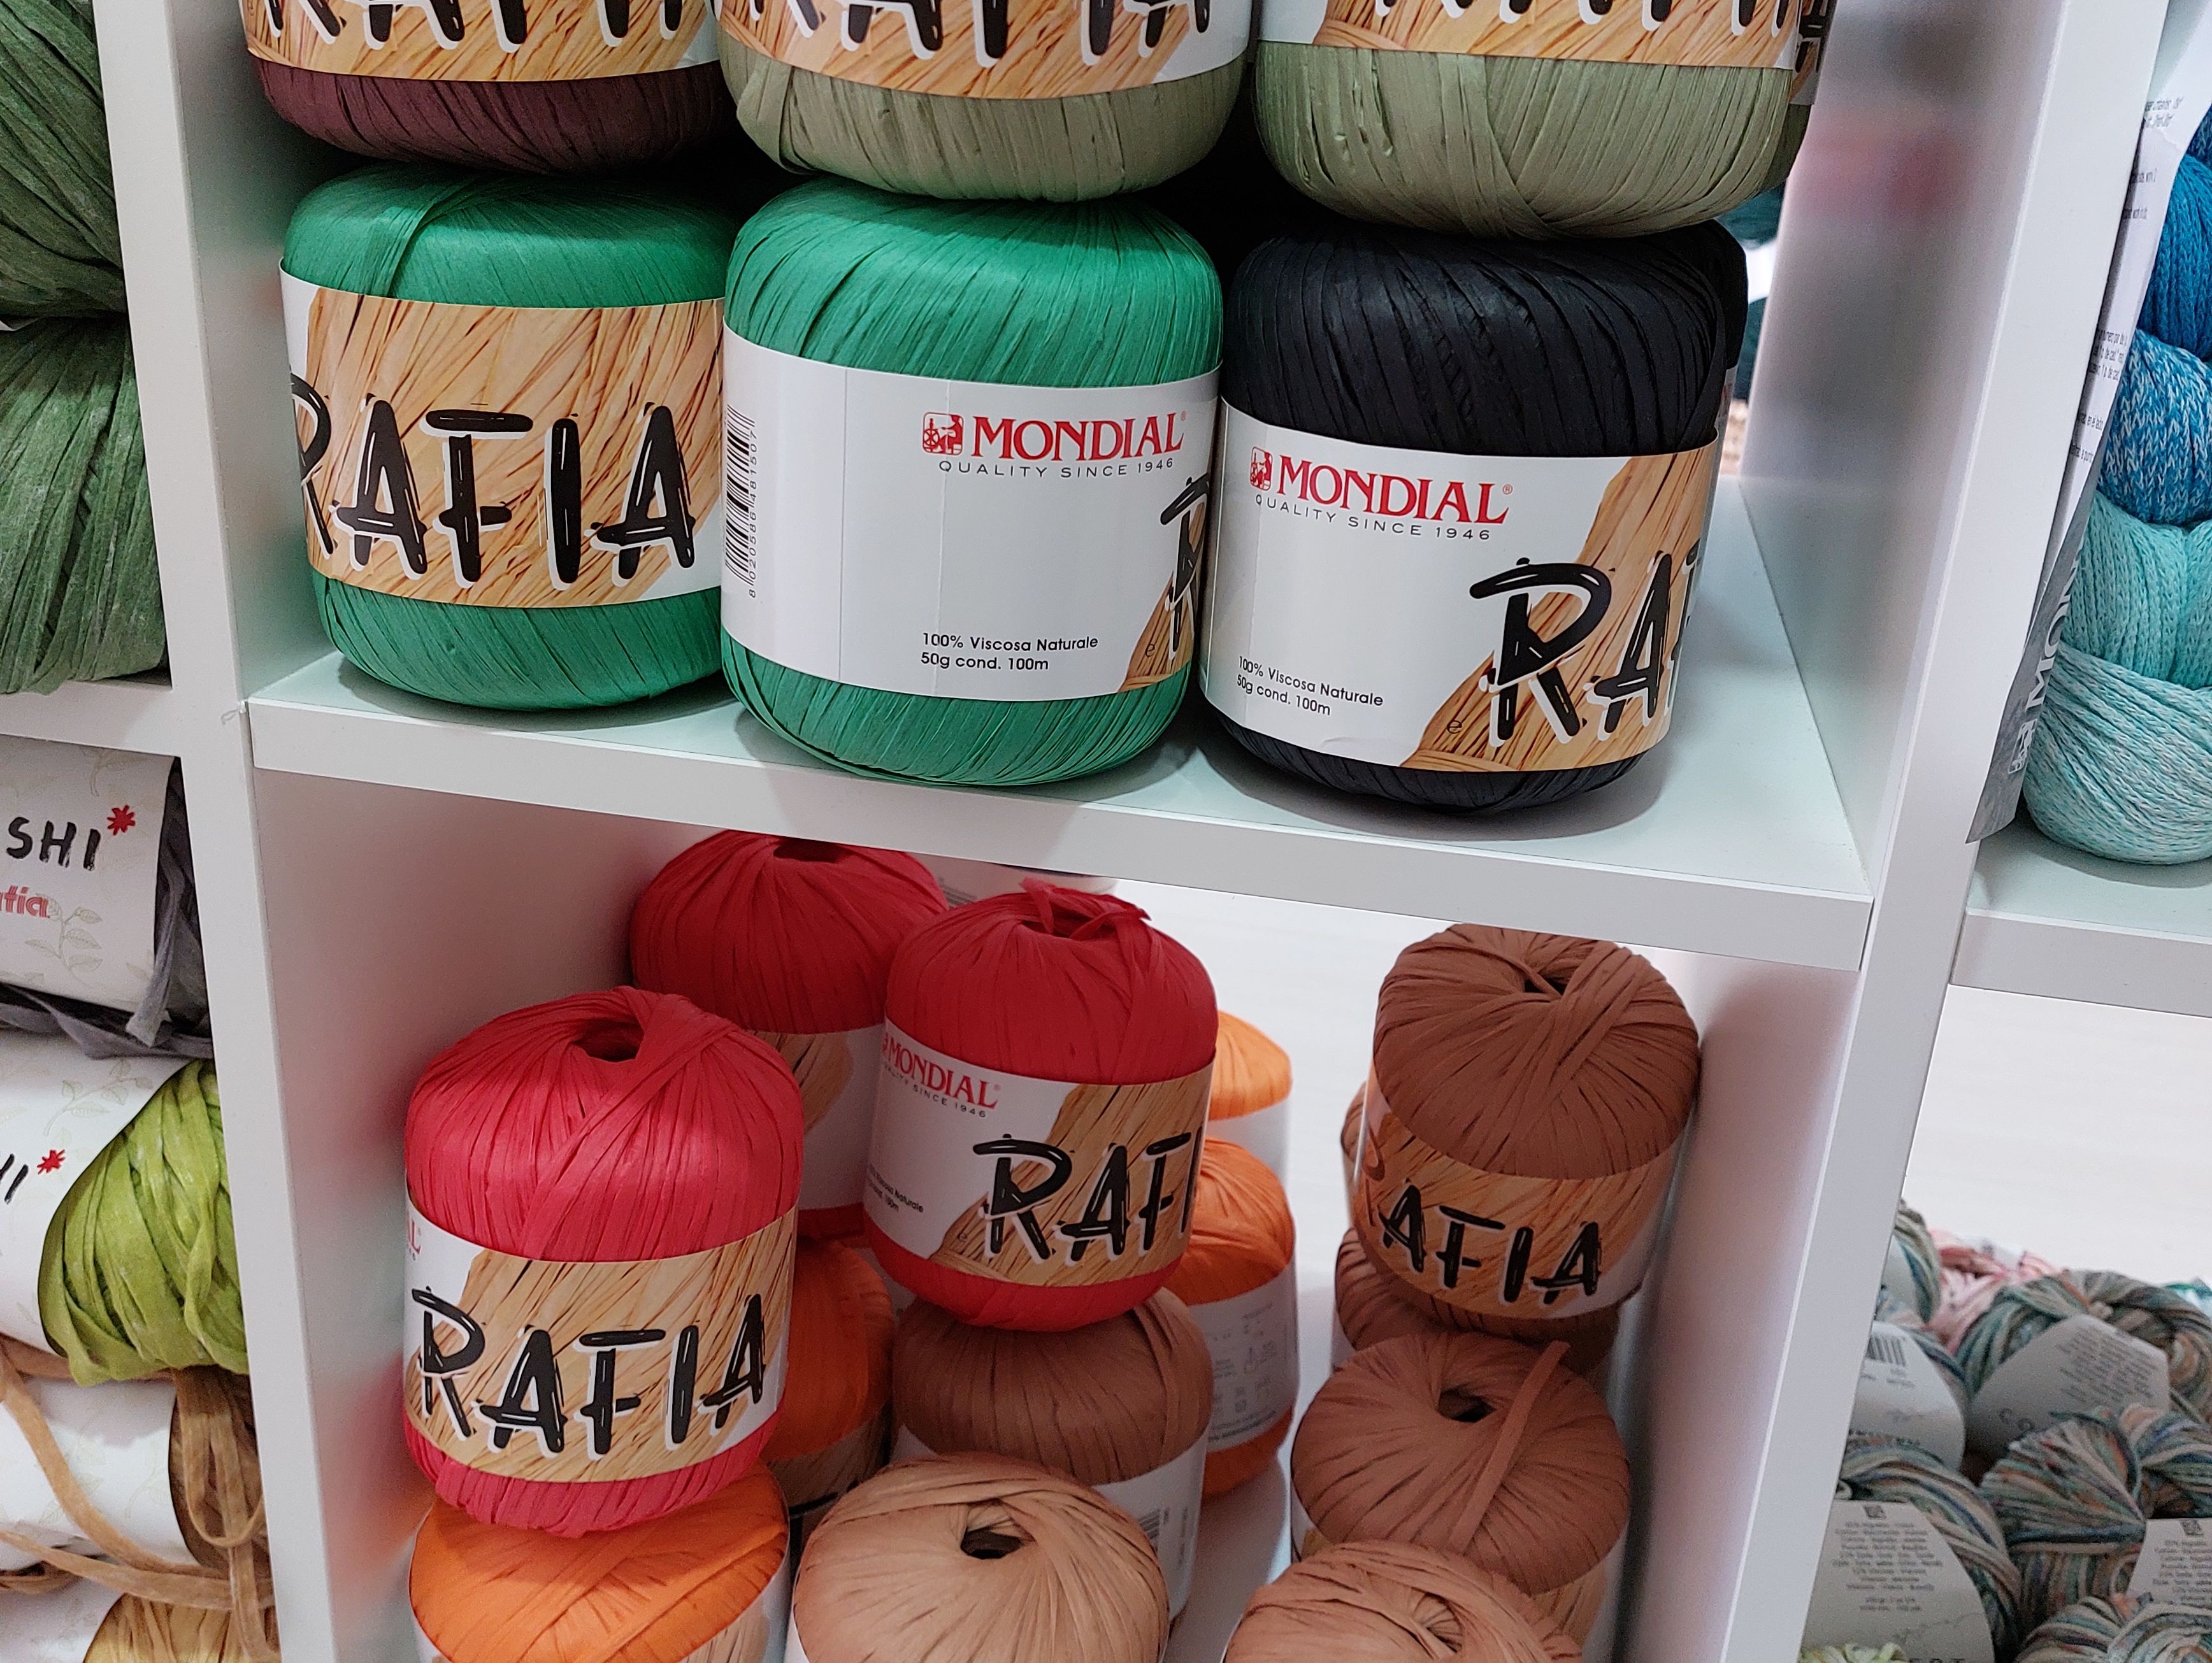 hilos de lana de distintos colores en tienda